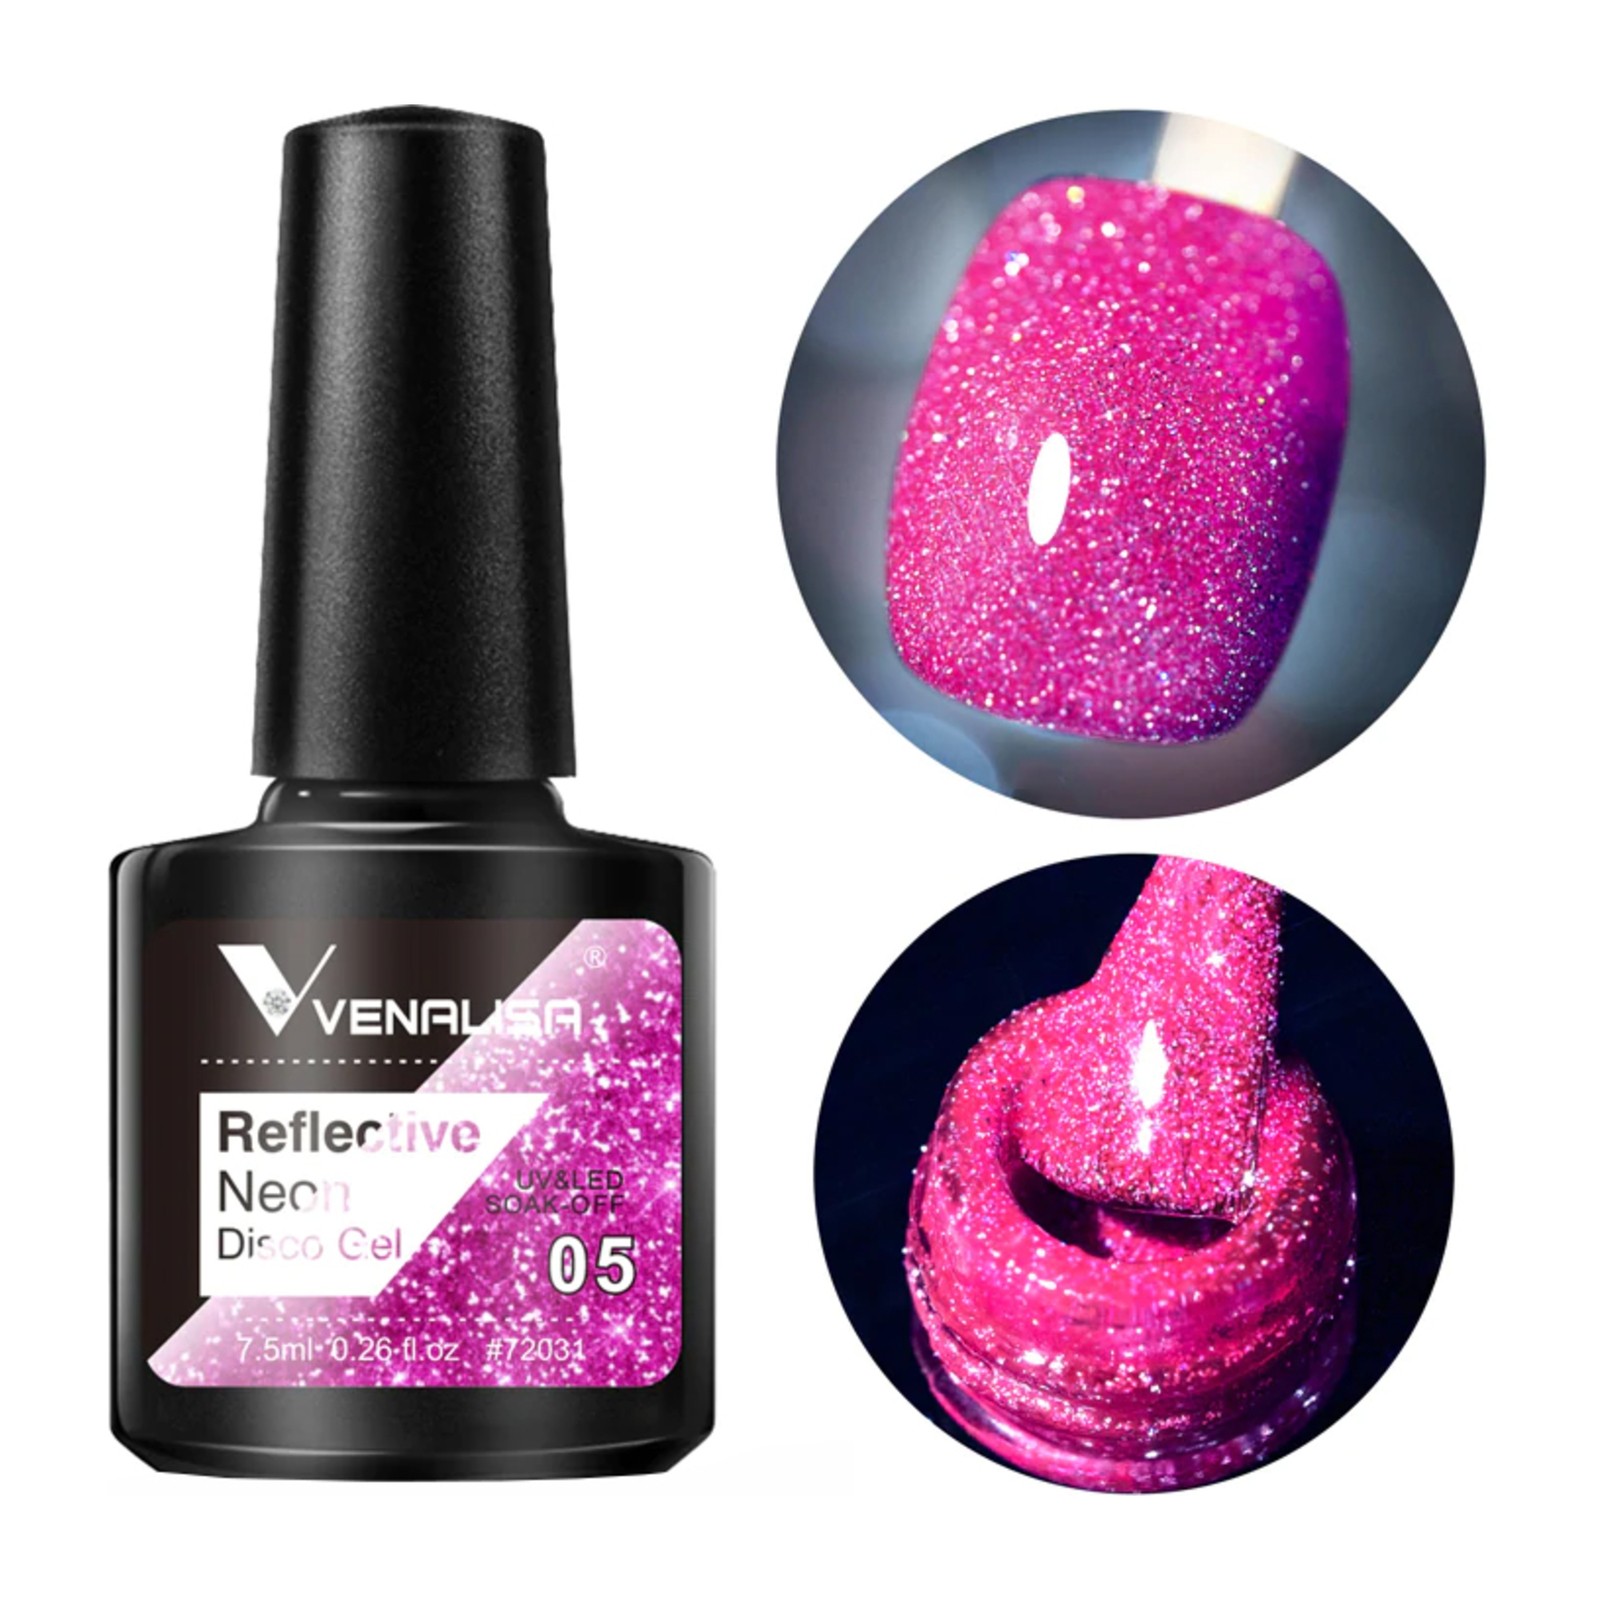 Venalisa -  Reflektéierend Neon Disco Gel -  BD05